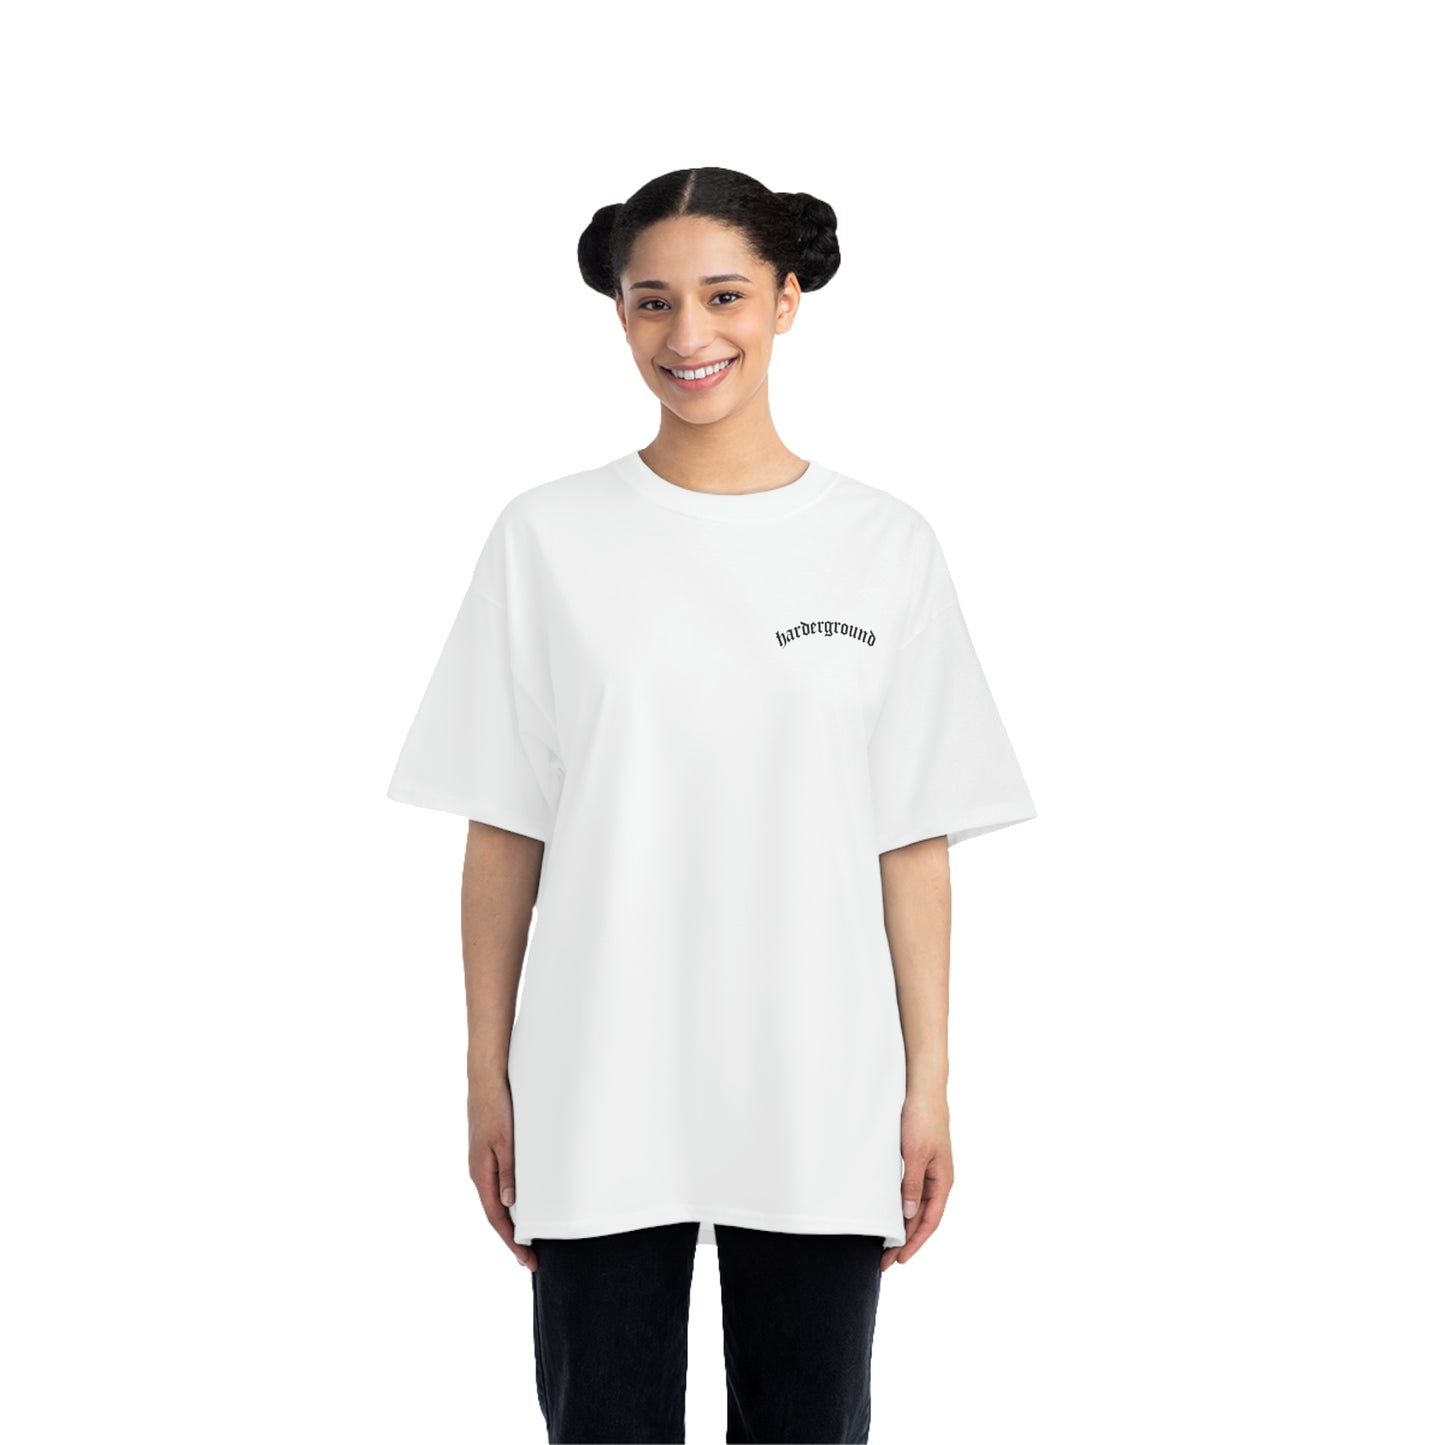 ART Harderground - Front &amp; back logos - Beefy-T® Short-Sleeve T-Shirt